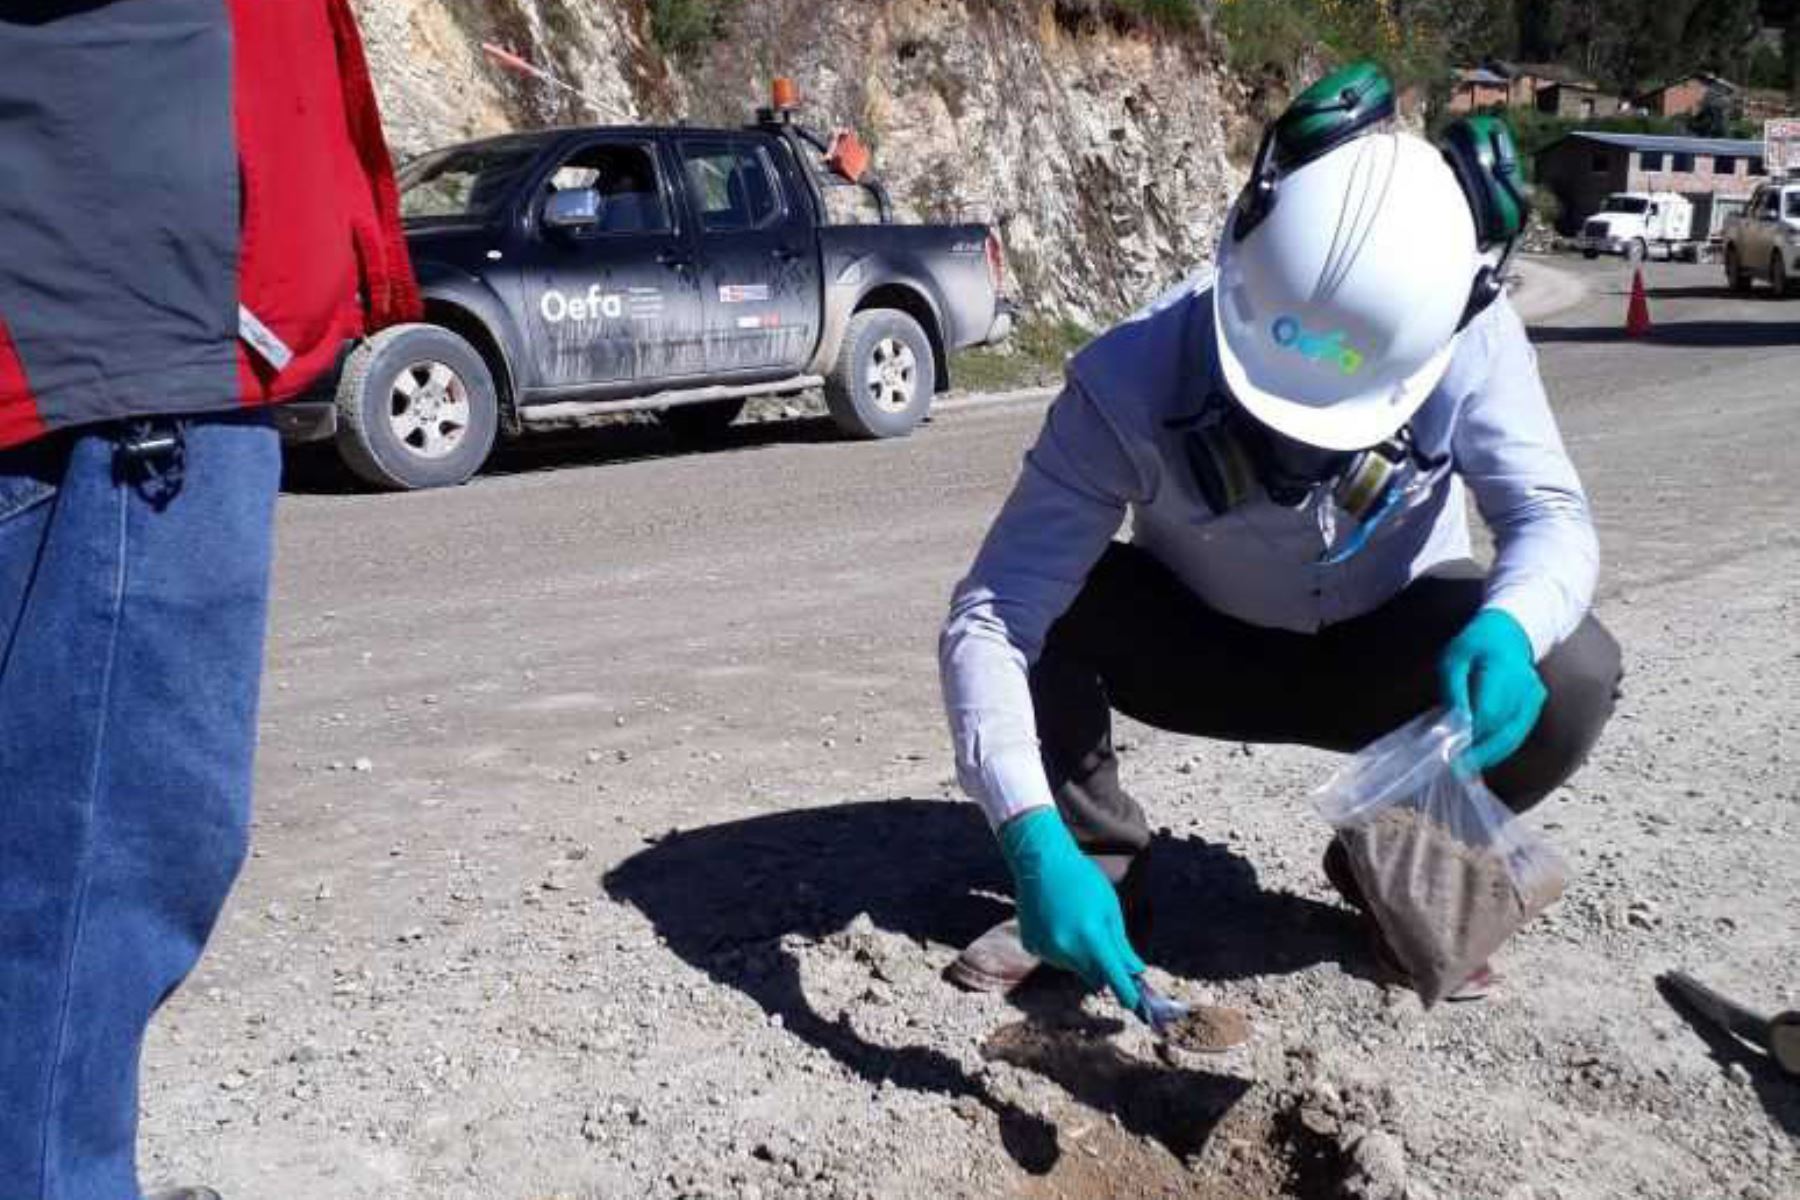 El Organismo de Evaluación y Fiscalización Ambiental (OEFA) realiza acciones de supervisión ante el derrame de sustancias químicas ocurrido en la carretera ubicada a la altura de la comunidad de Yuricancha, en el distrito de Mara, provincia de Cotabambas, departamento de Apurímac.